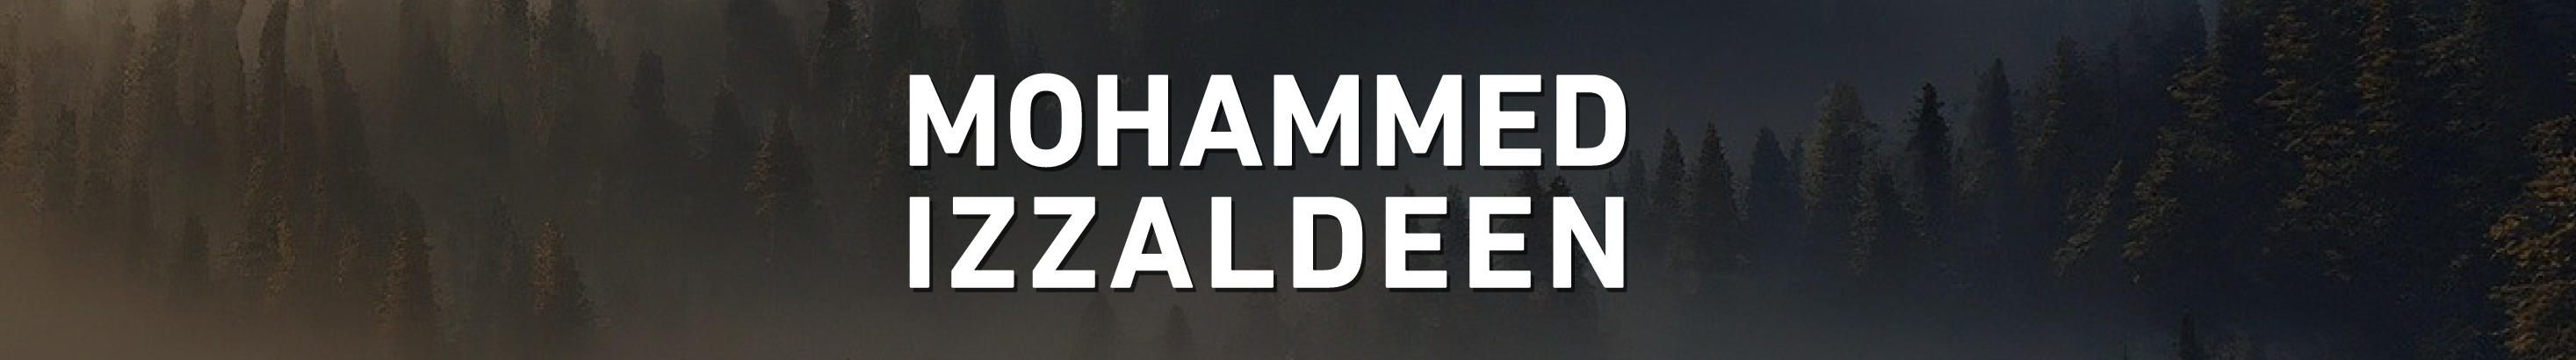 Mohammed Izzaldeen's profile banner